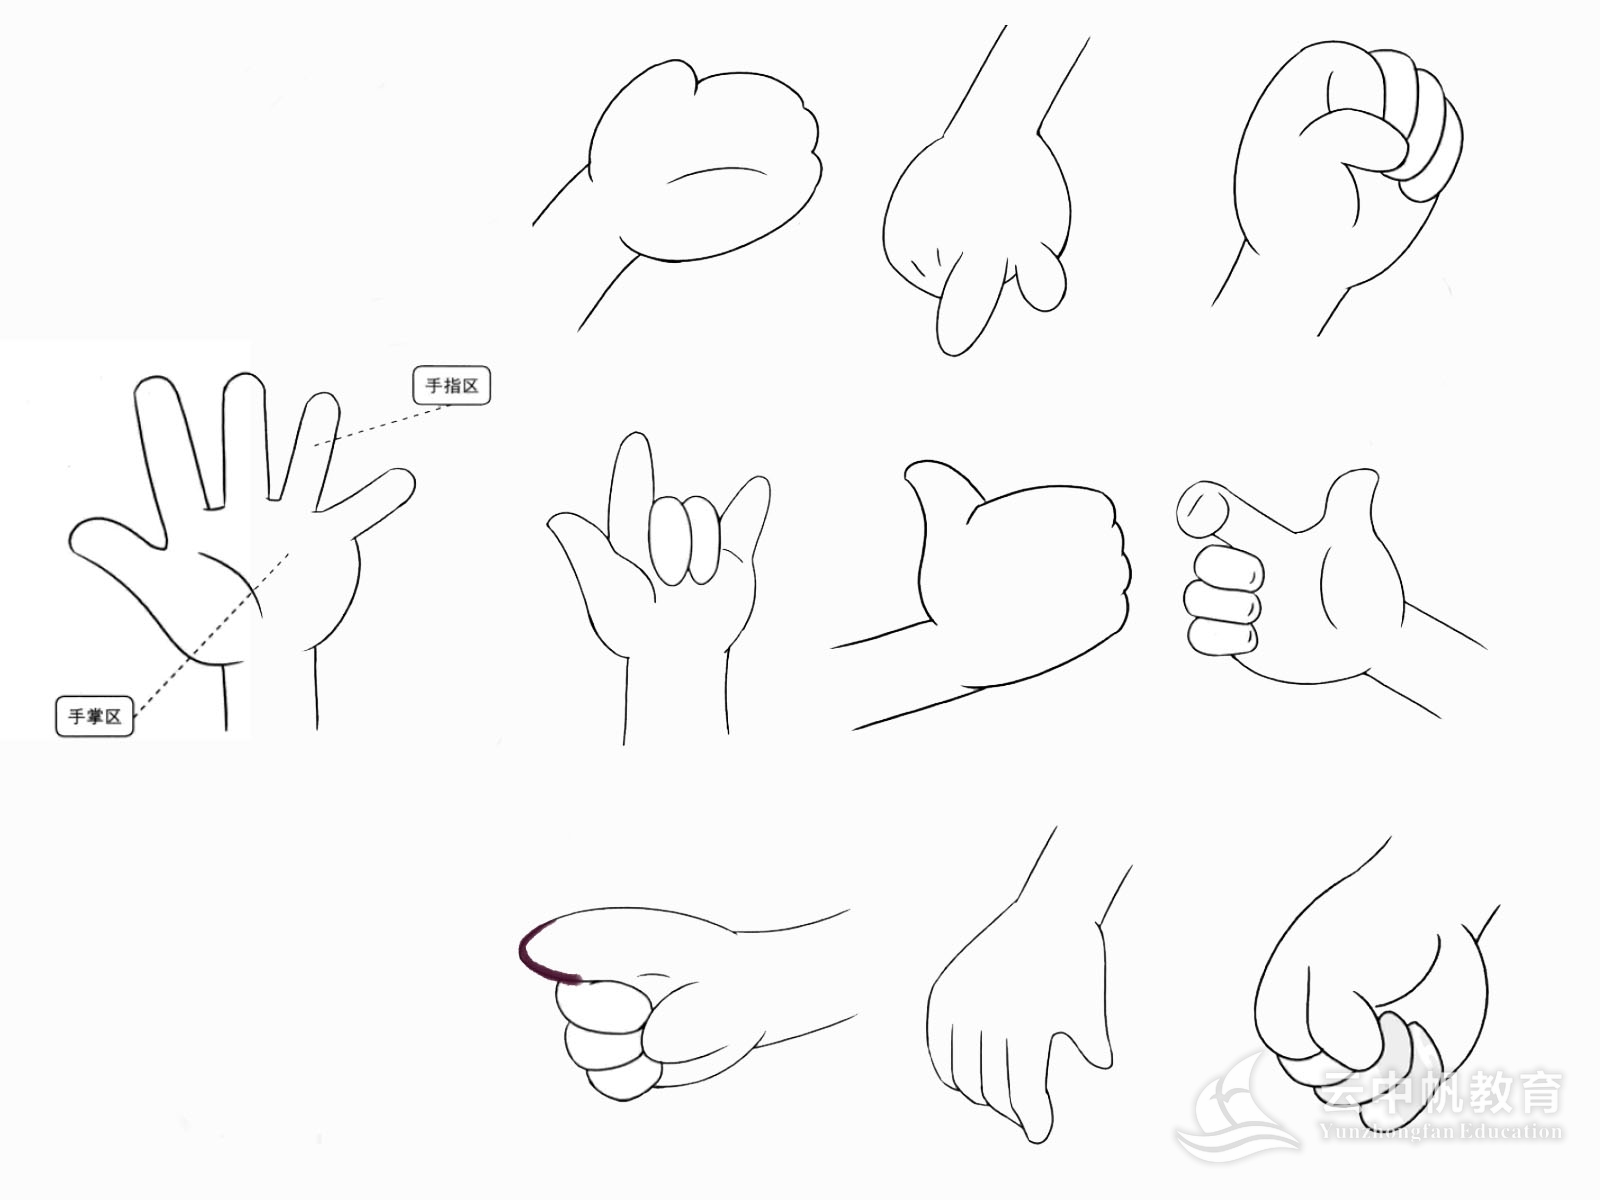 绘制手的流程,如何绘制一双好看的手,q手与正常版手的区别.